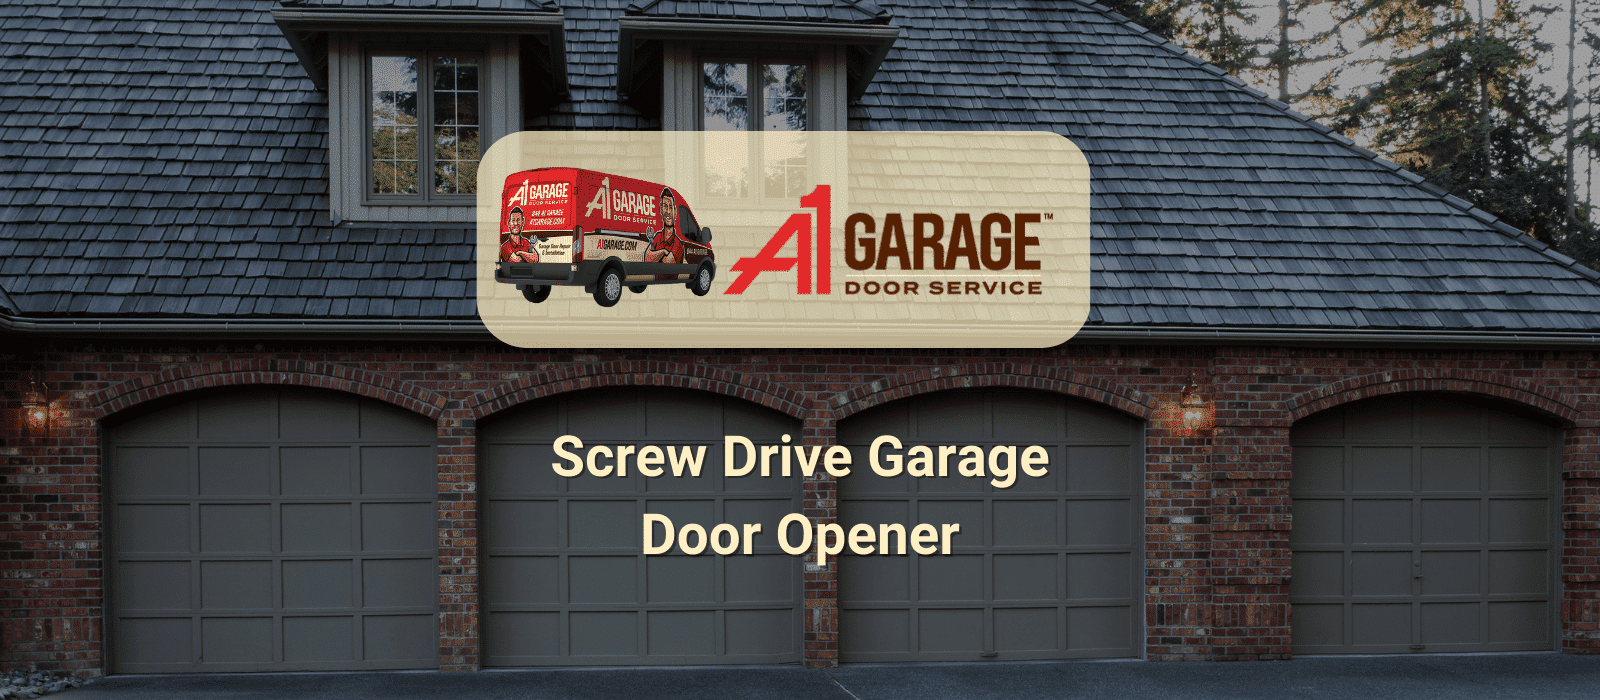 A1 Garage Screw Drive Garage Door Opener